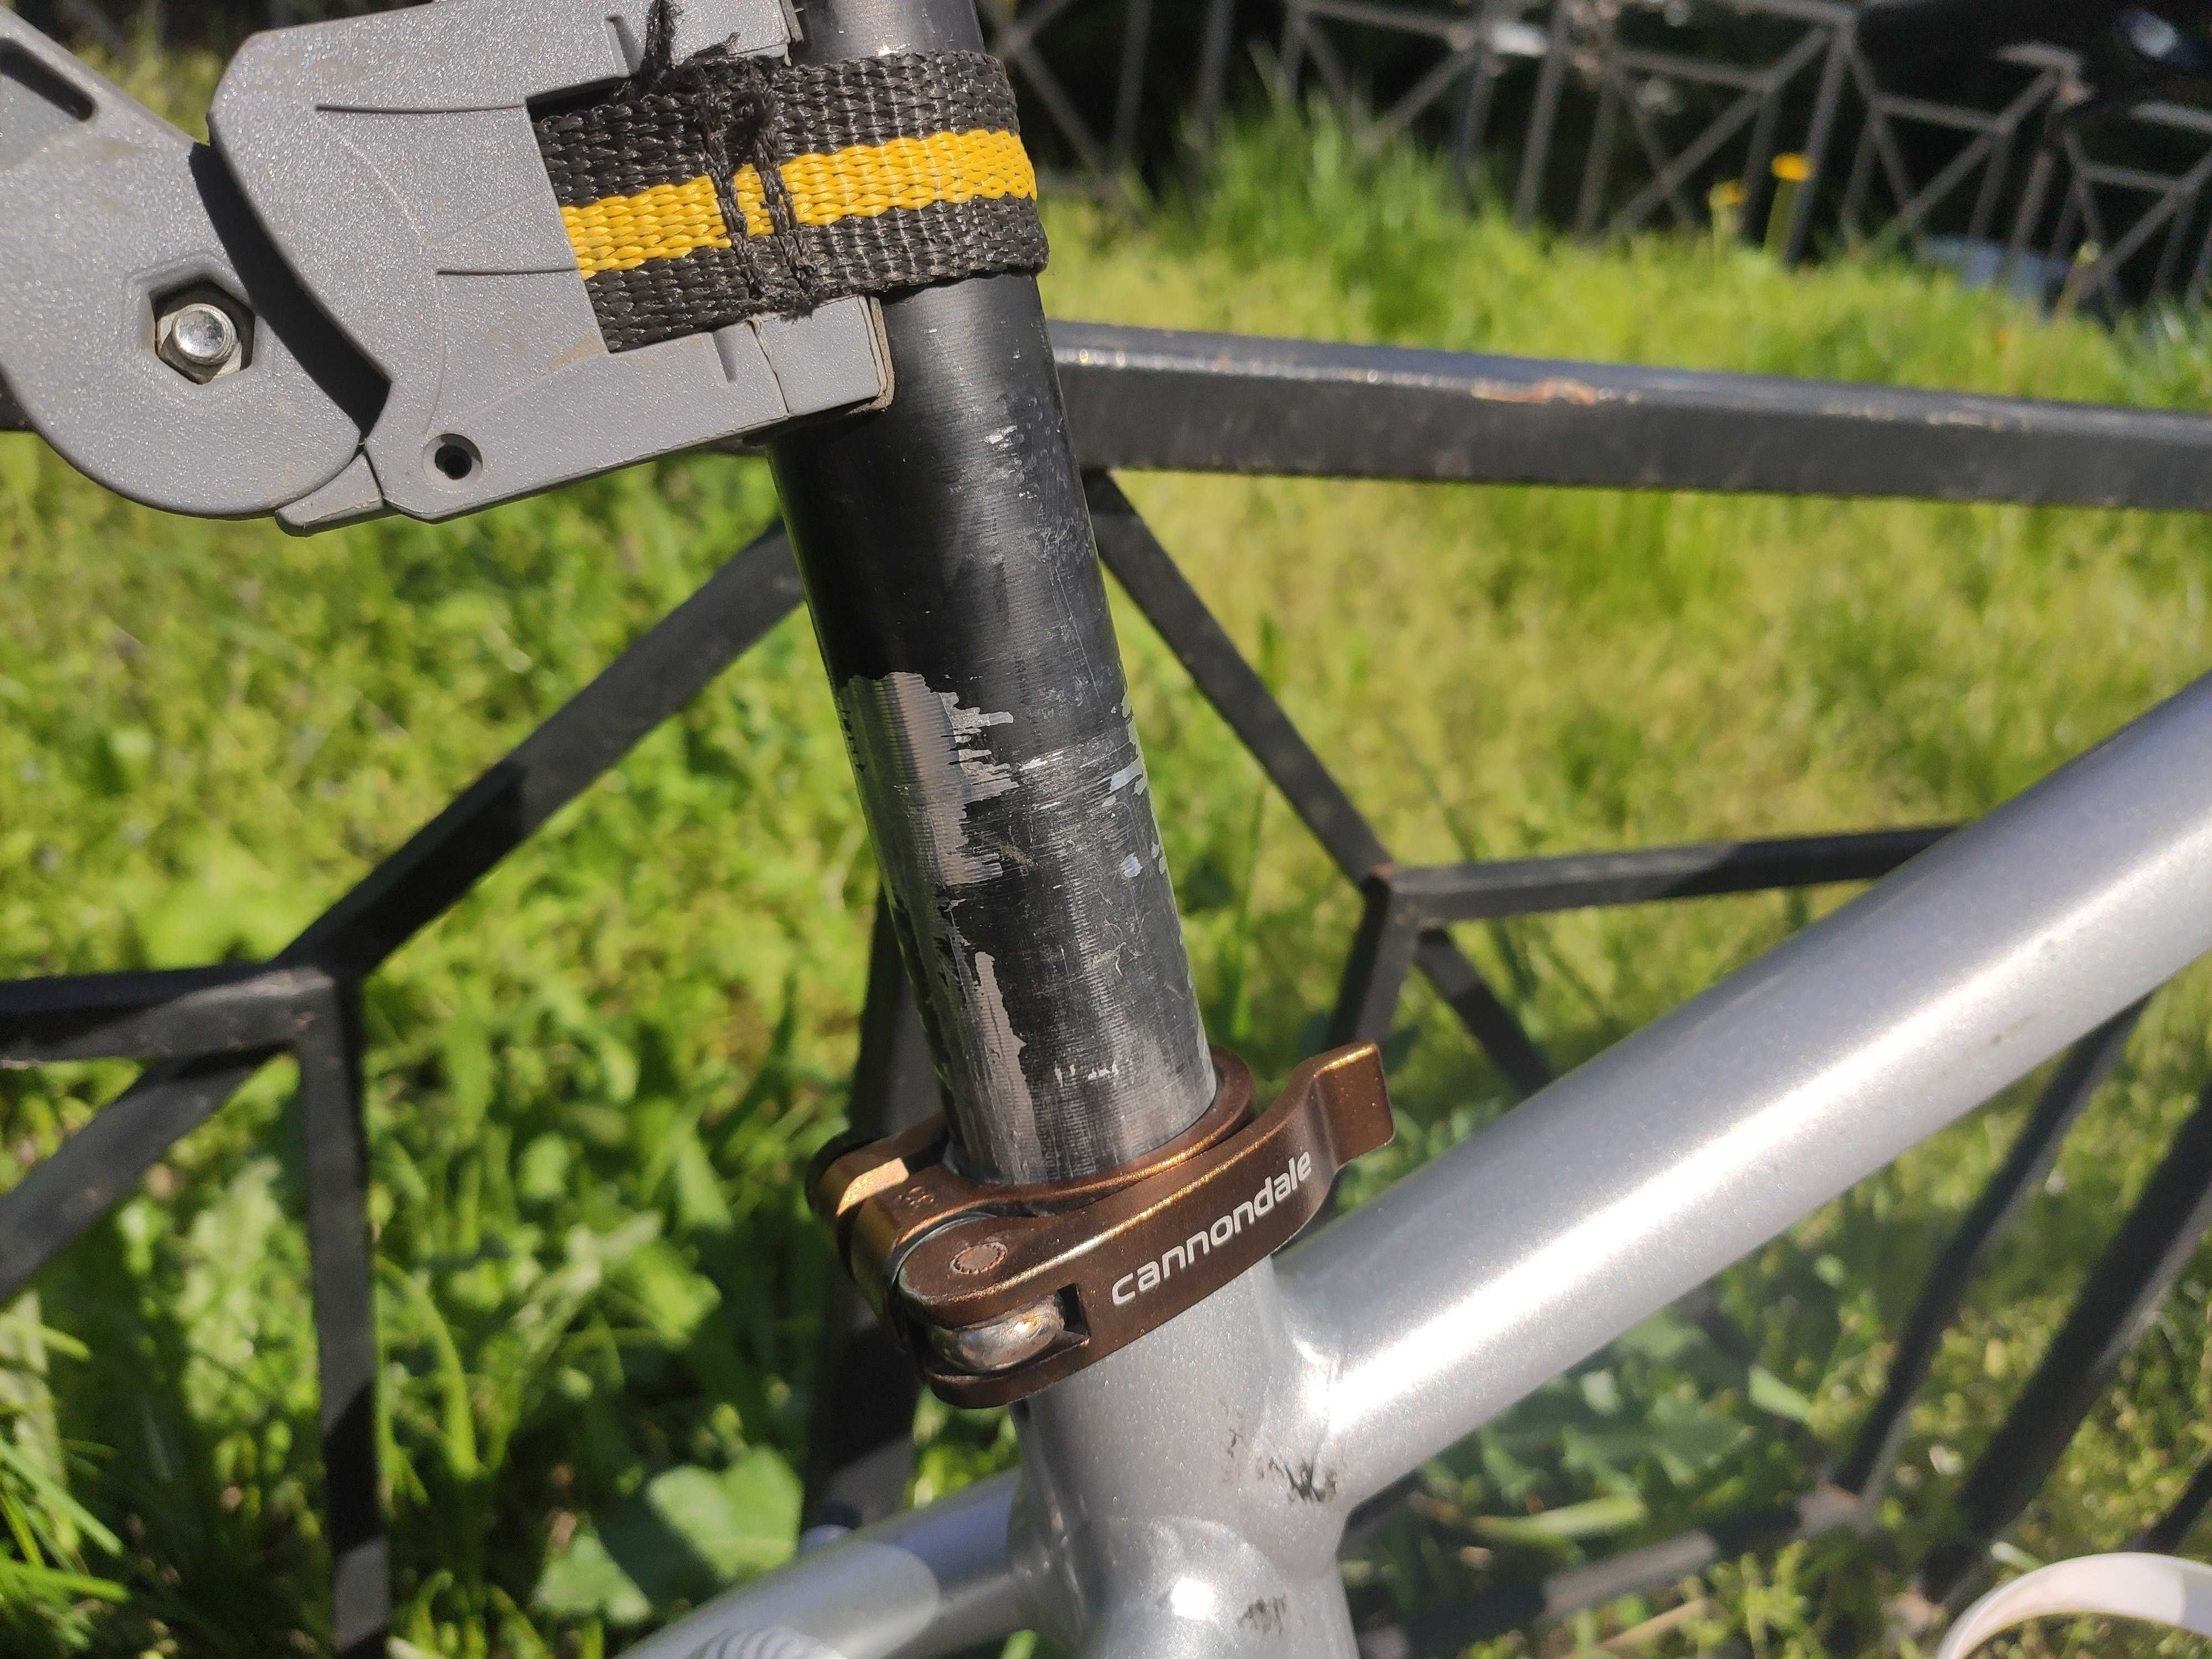 Велосипед Cannondale Trail 6 2019 року, рама розміру М